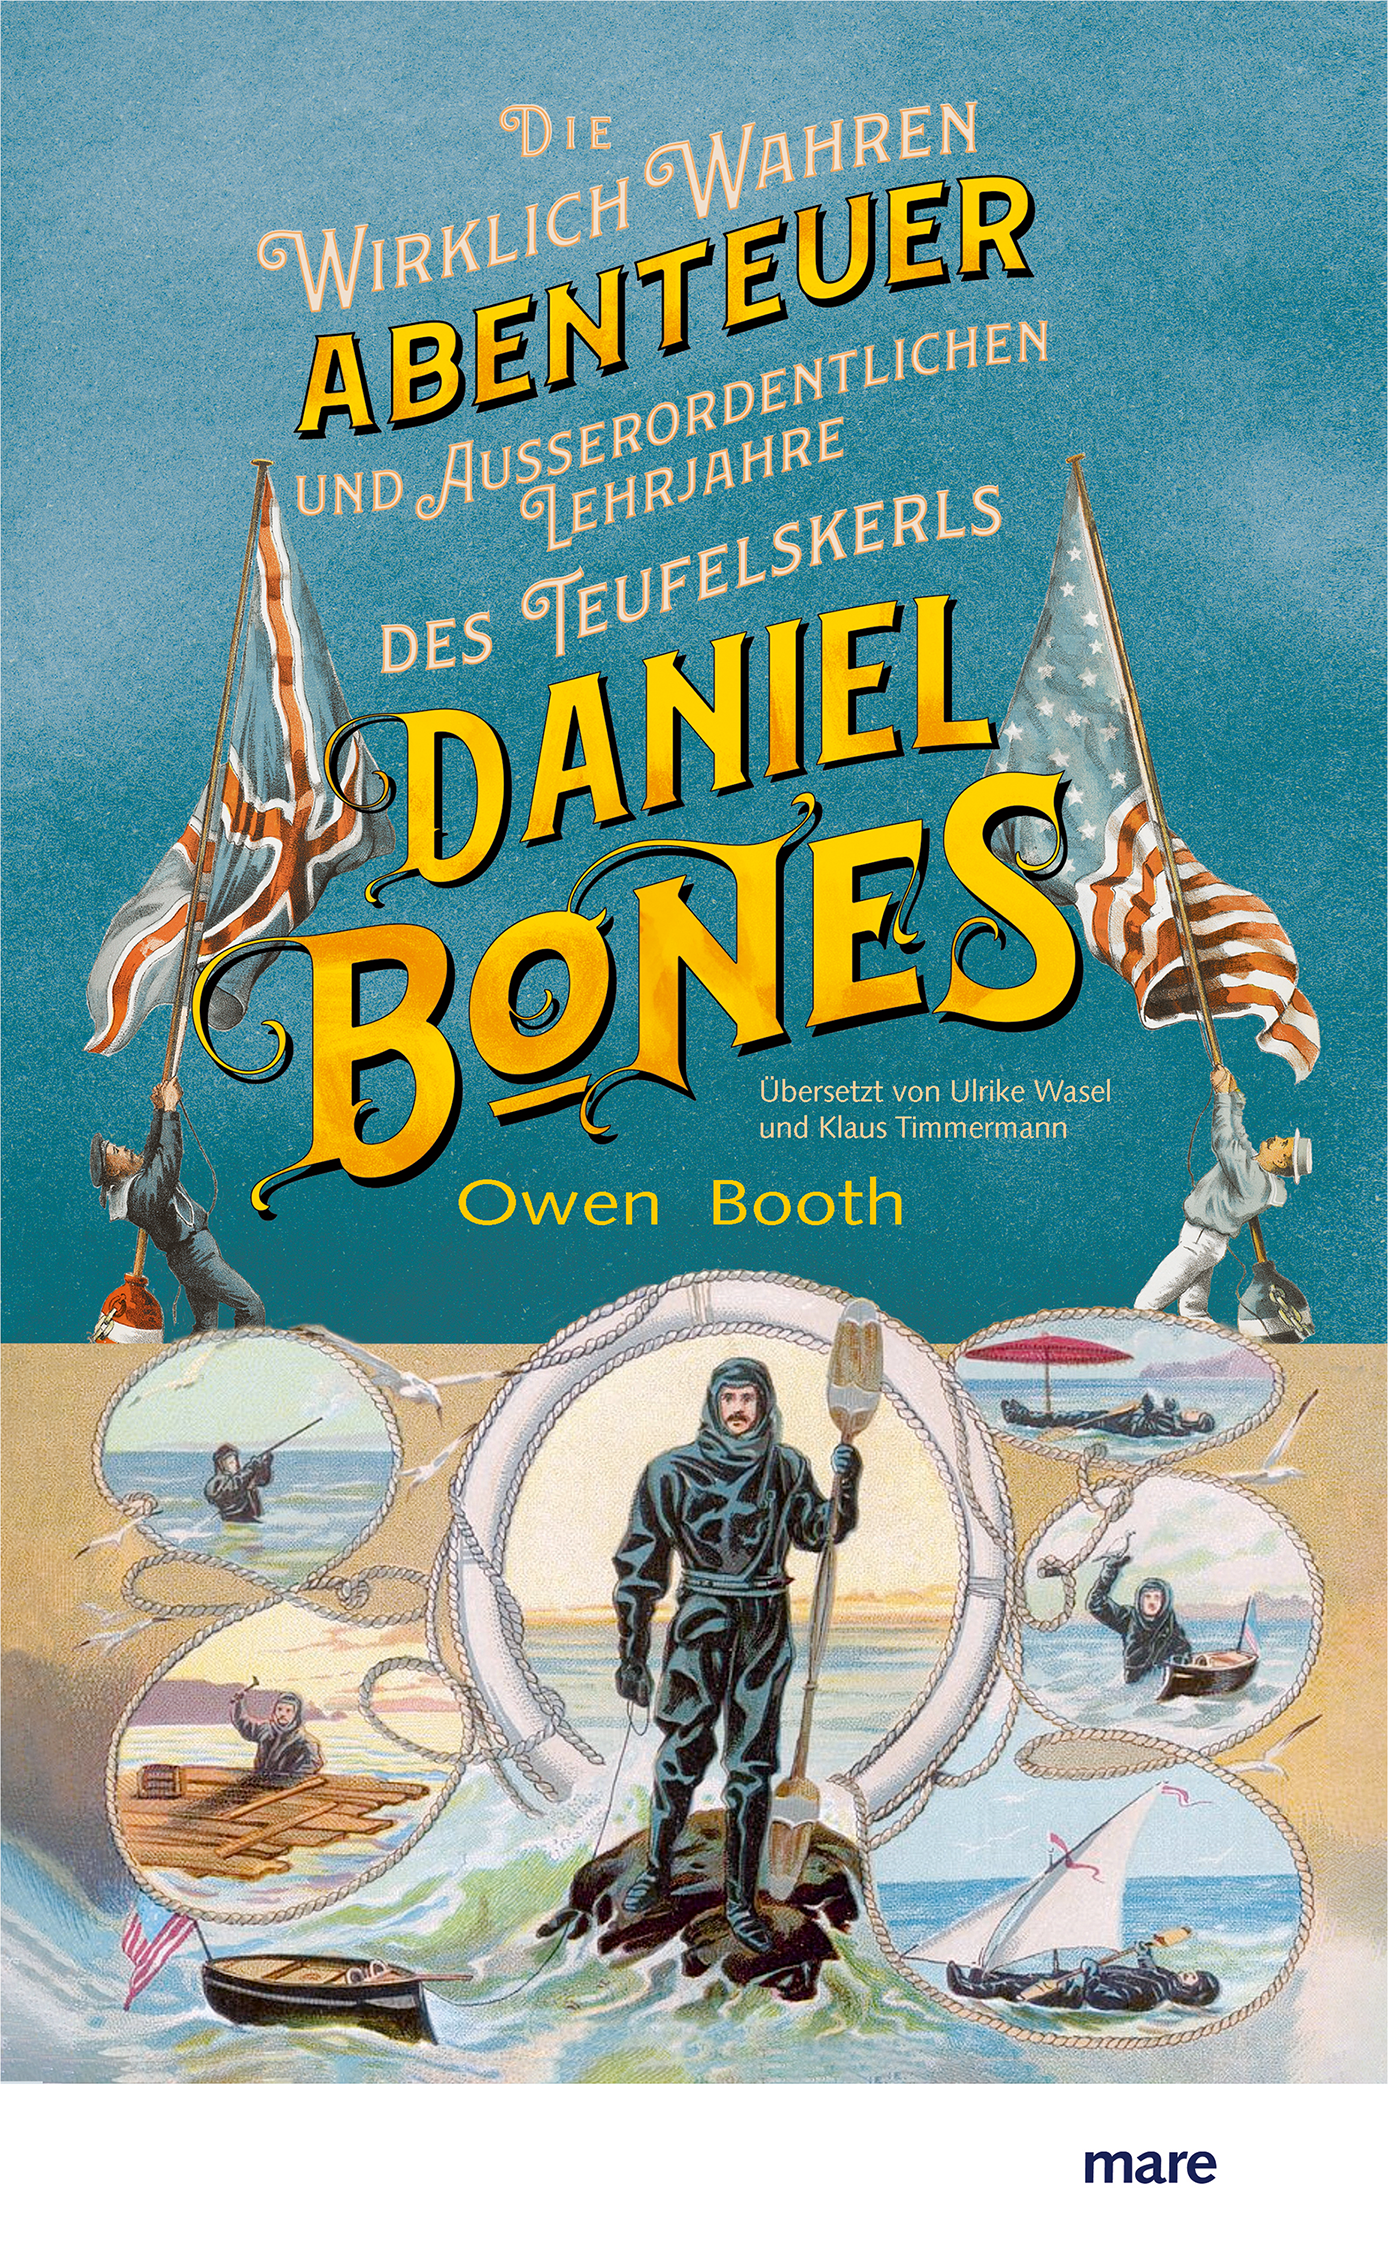 Die wirklich wahren Abenteuer (und außerordentlichen Lehrjahre) des Teufelskerls Daniel Bones - Owen Booth